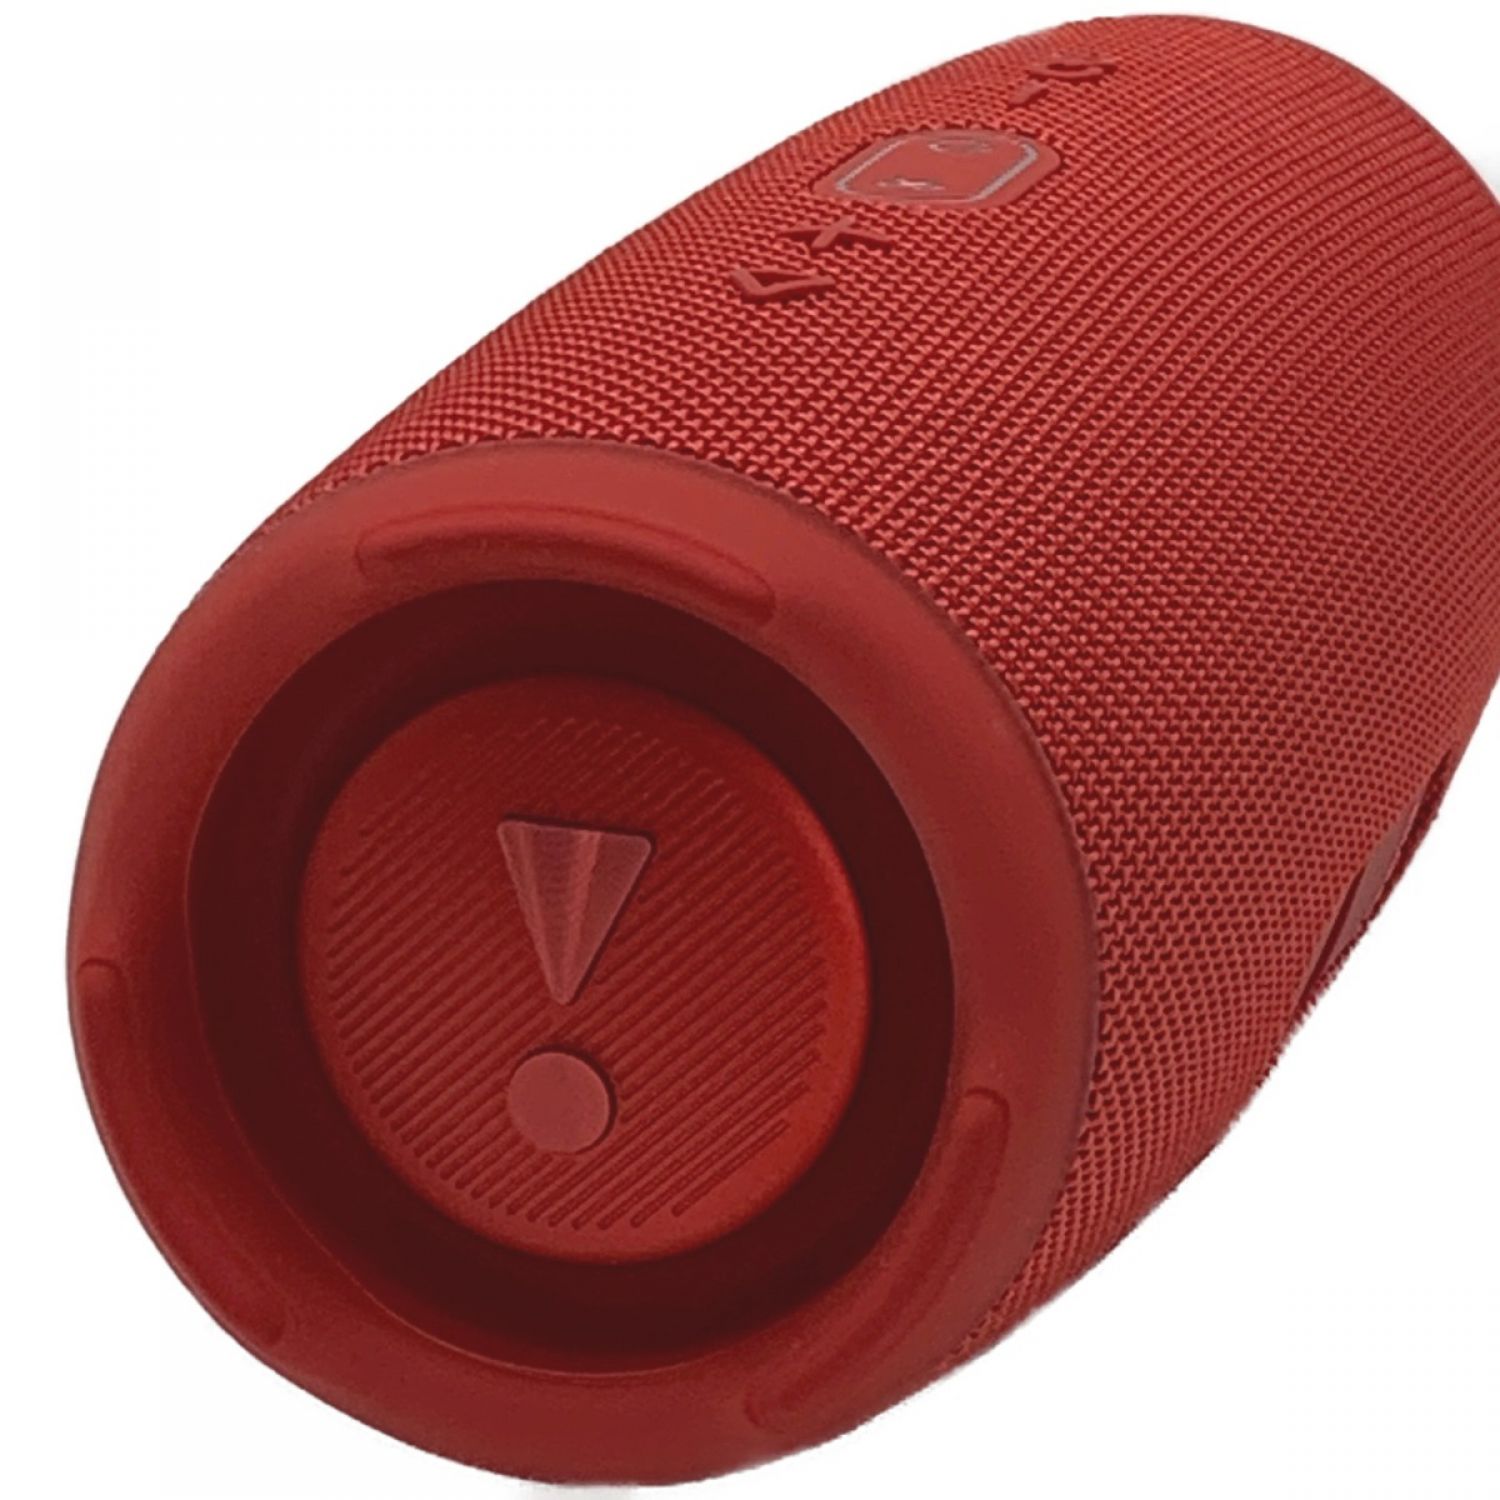 JBL CHARGE 5 RED モバイルバッテリー機能付きポータブル防水スピーJBL発売年月日